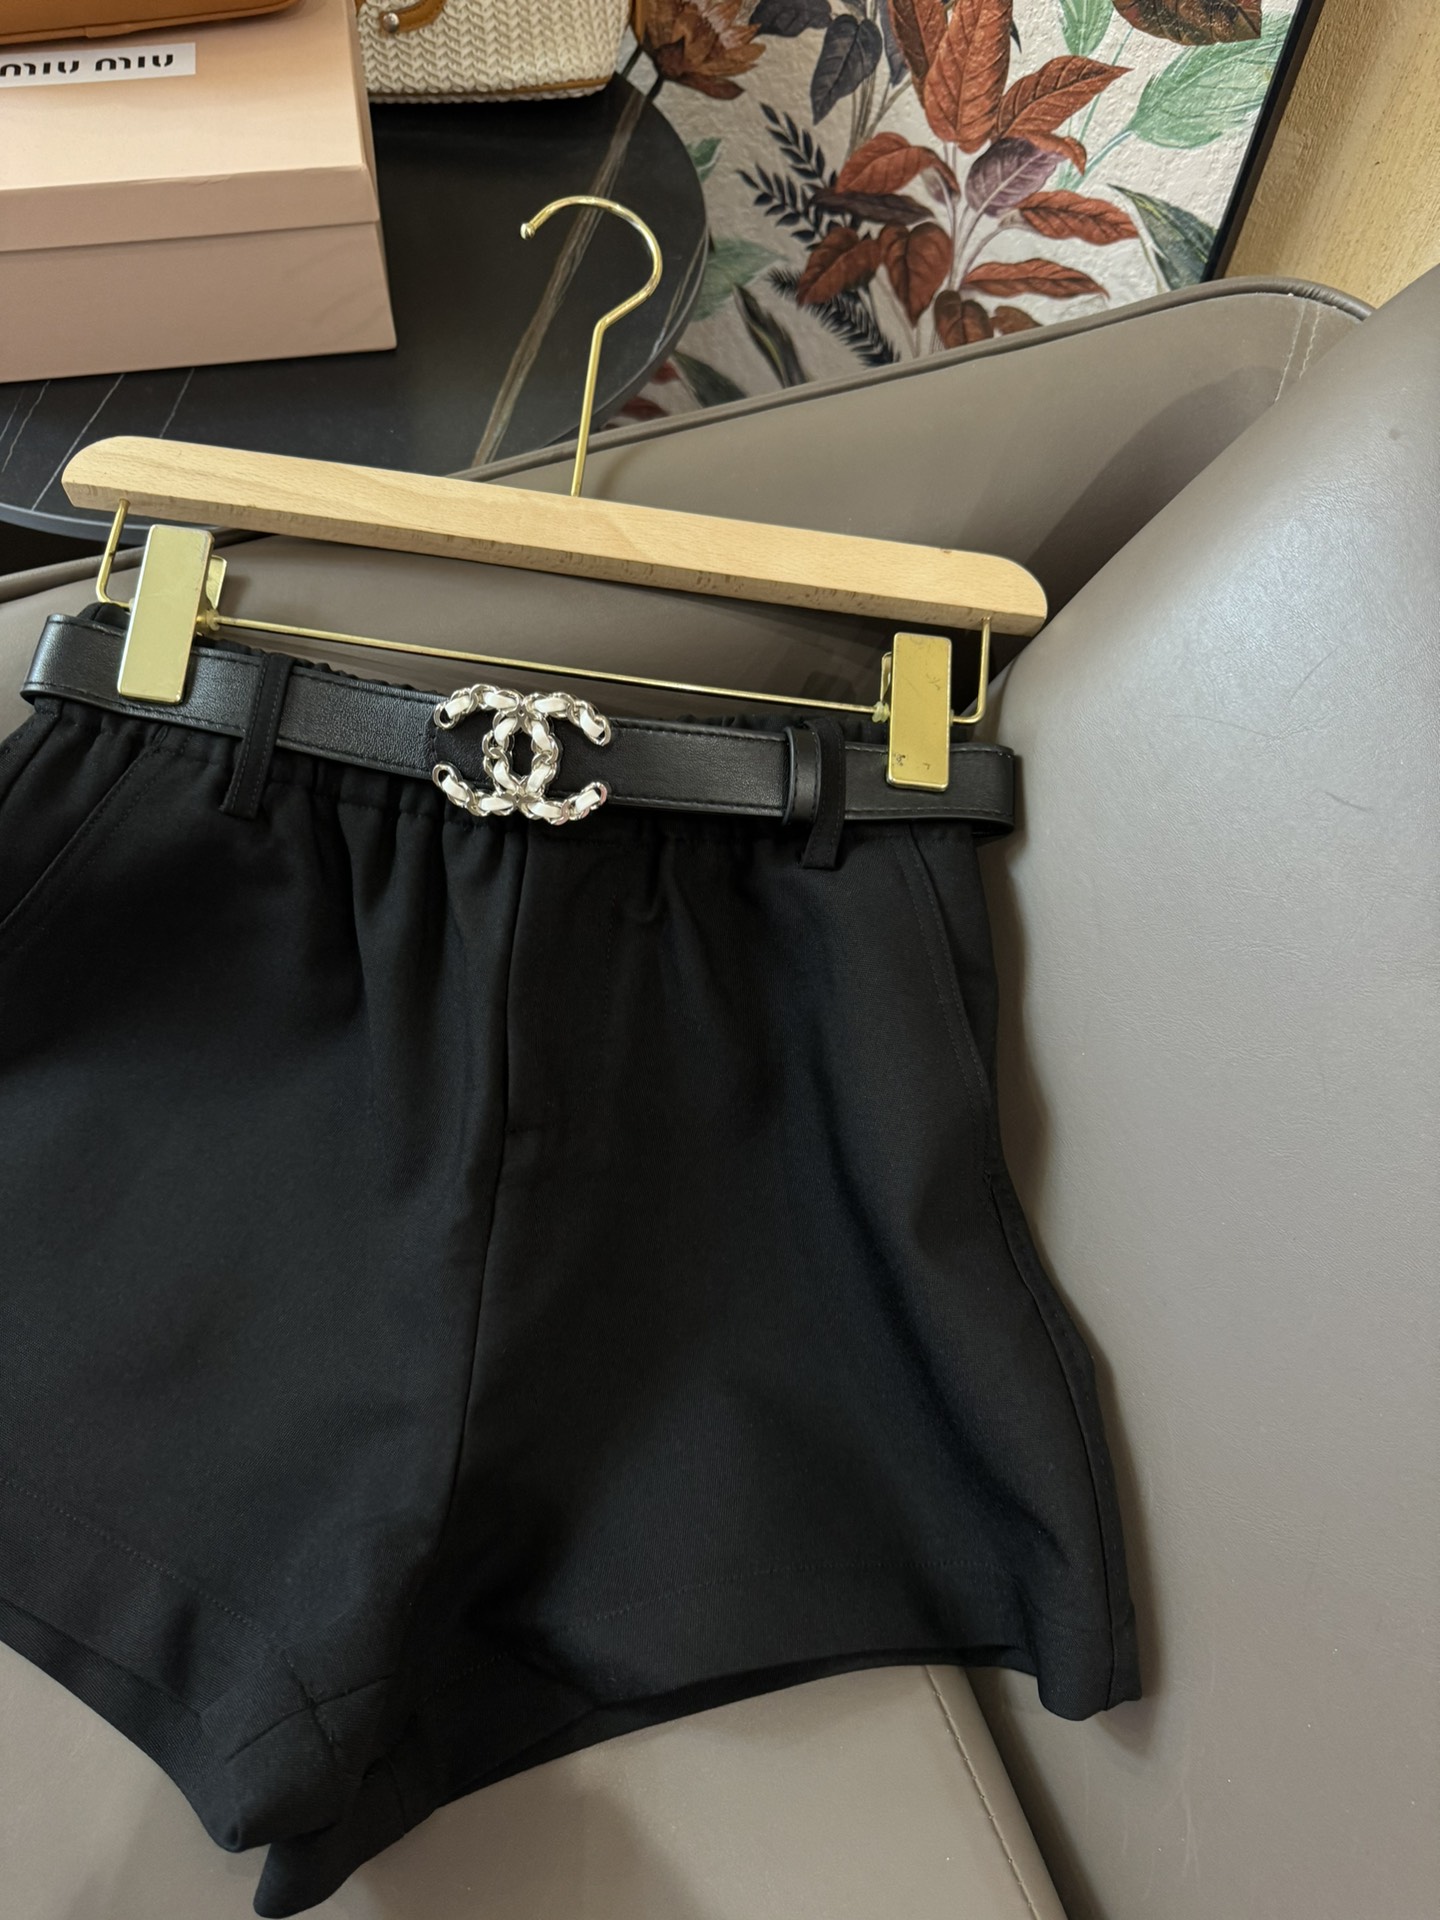 JM007#新款短裤Chanel配腰带甜妹必备款百搭短裤白色黑色SMLXL